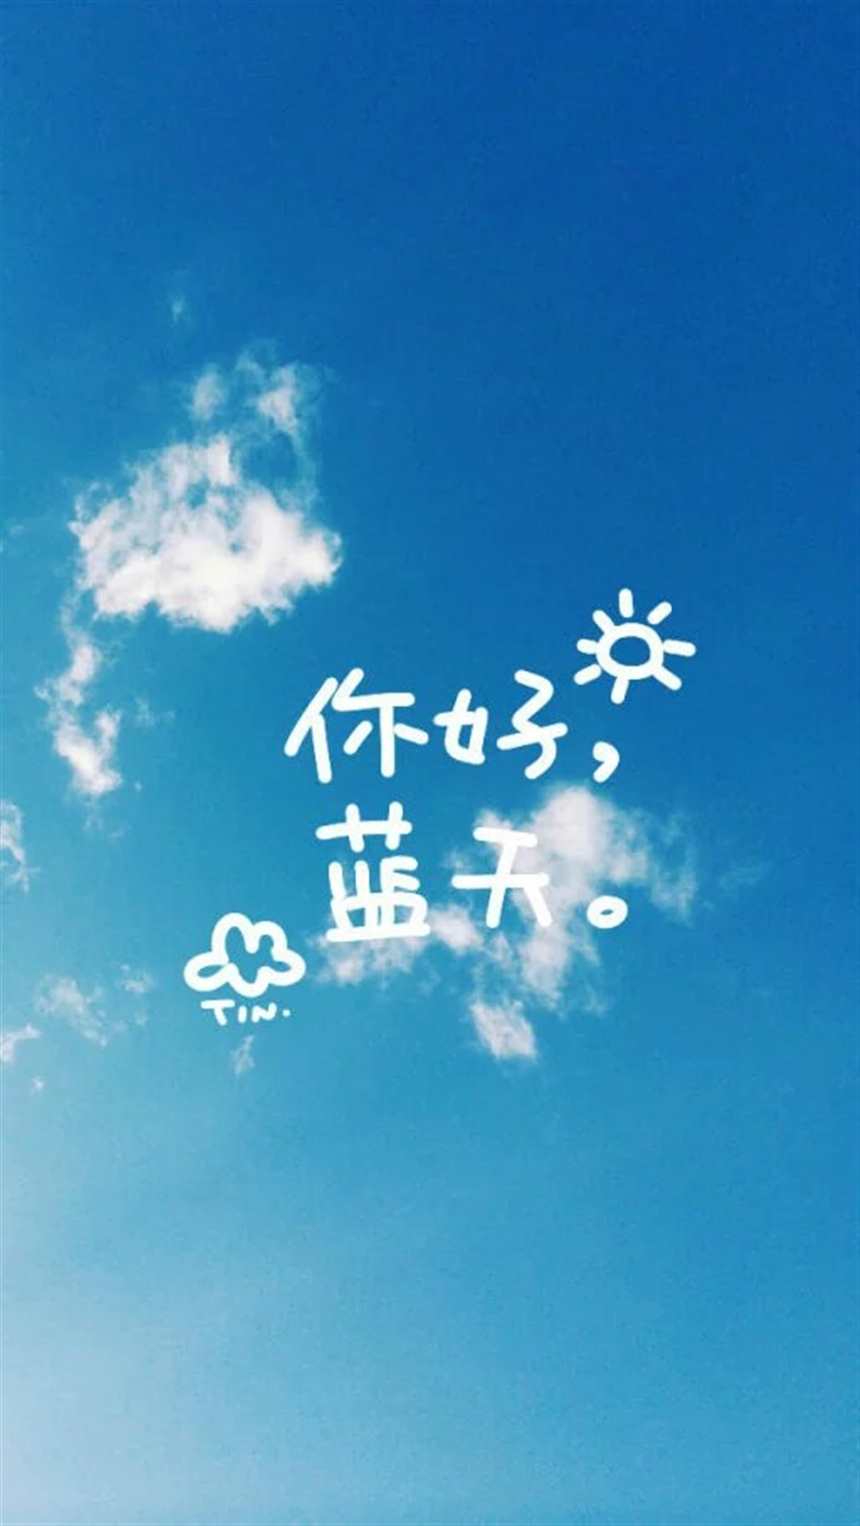 这么美的蓝天白云佩带小字幅~希望带给你一天的好心情#天空#唯美#文字控